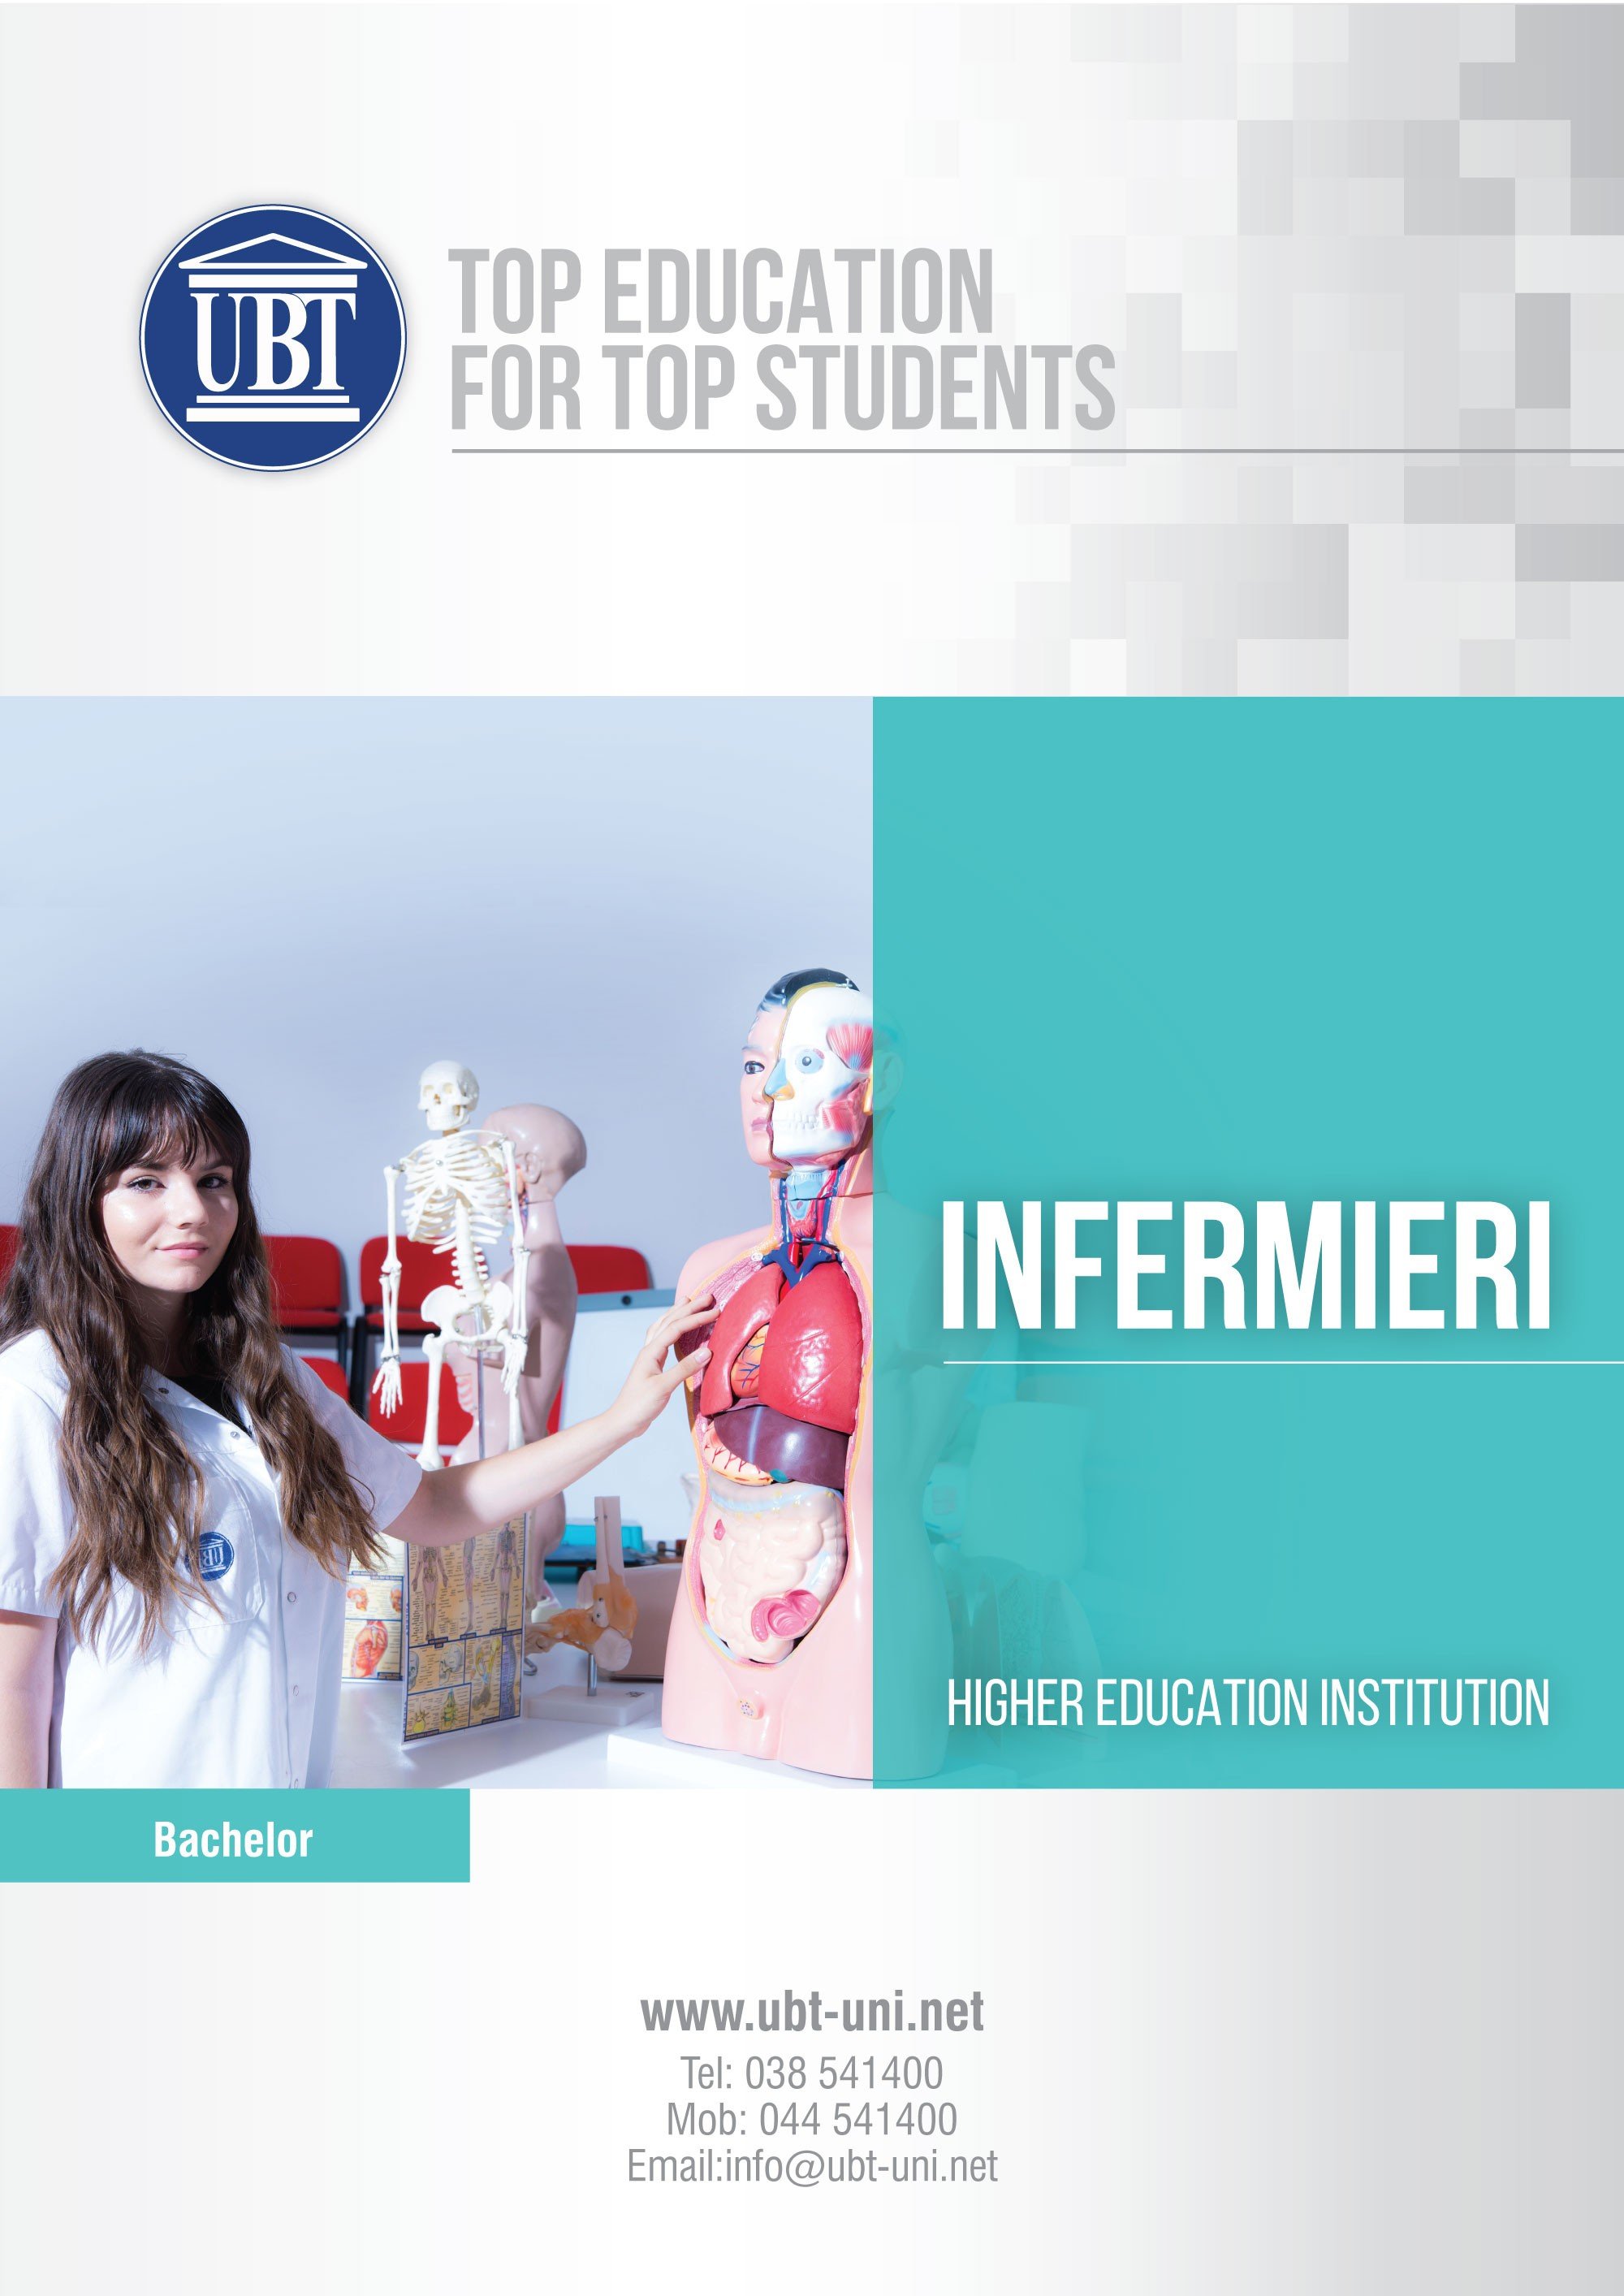 Programi i Infermierisë në UBT, mundësia më e mirë për përgatitjen profesionale e akademike të infermierëve të ardhshëm